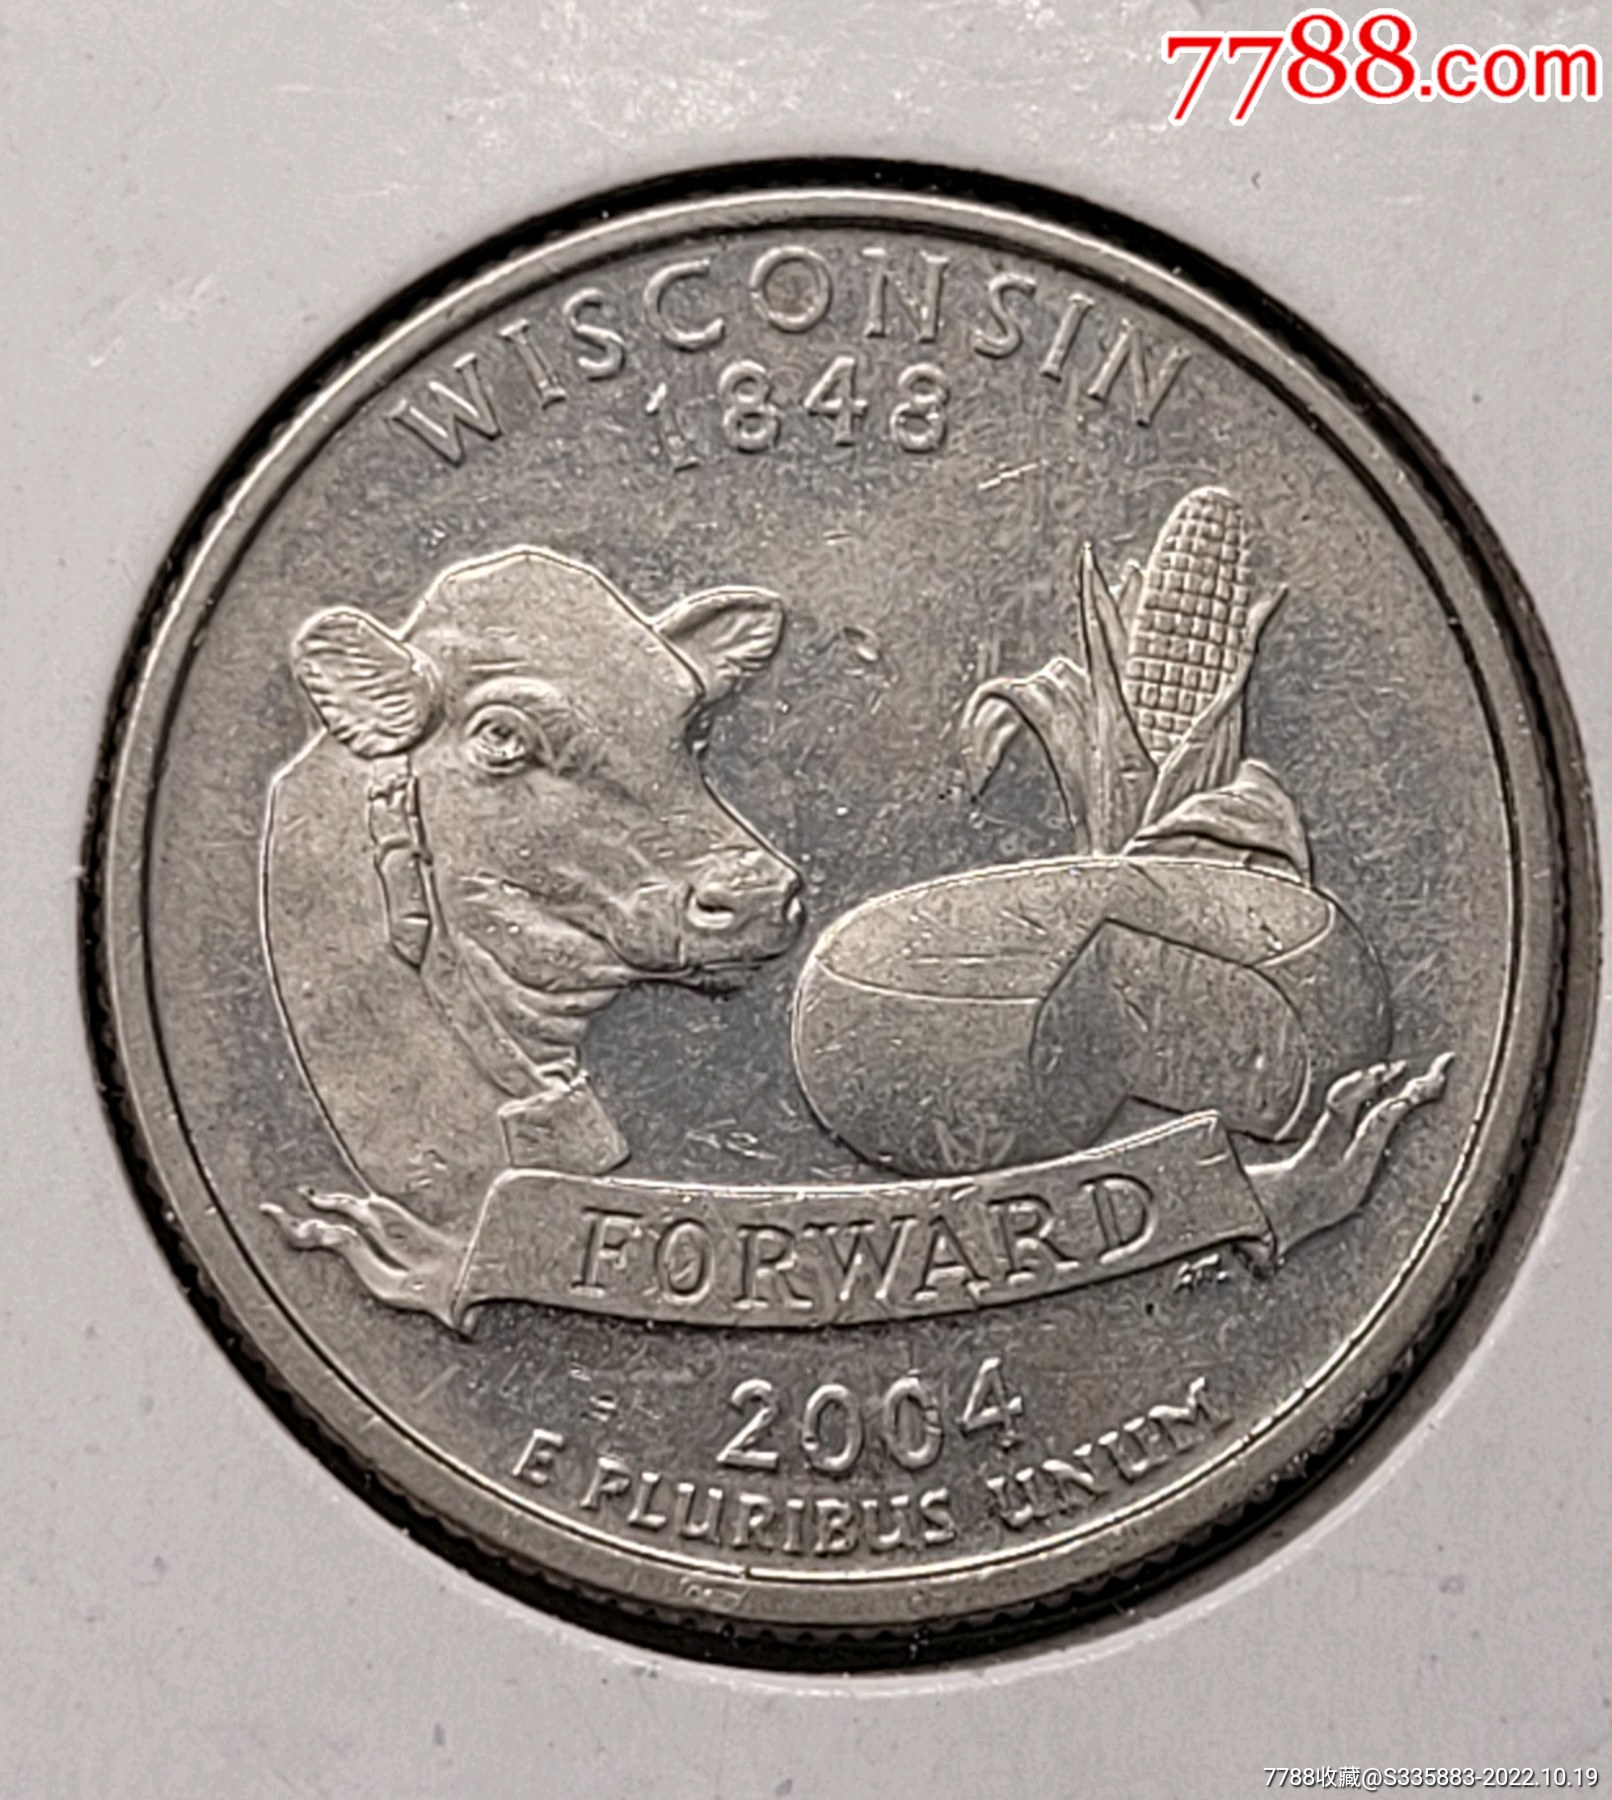 2004年美国25美分,威斯康星州州币,厂记s